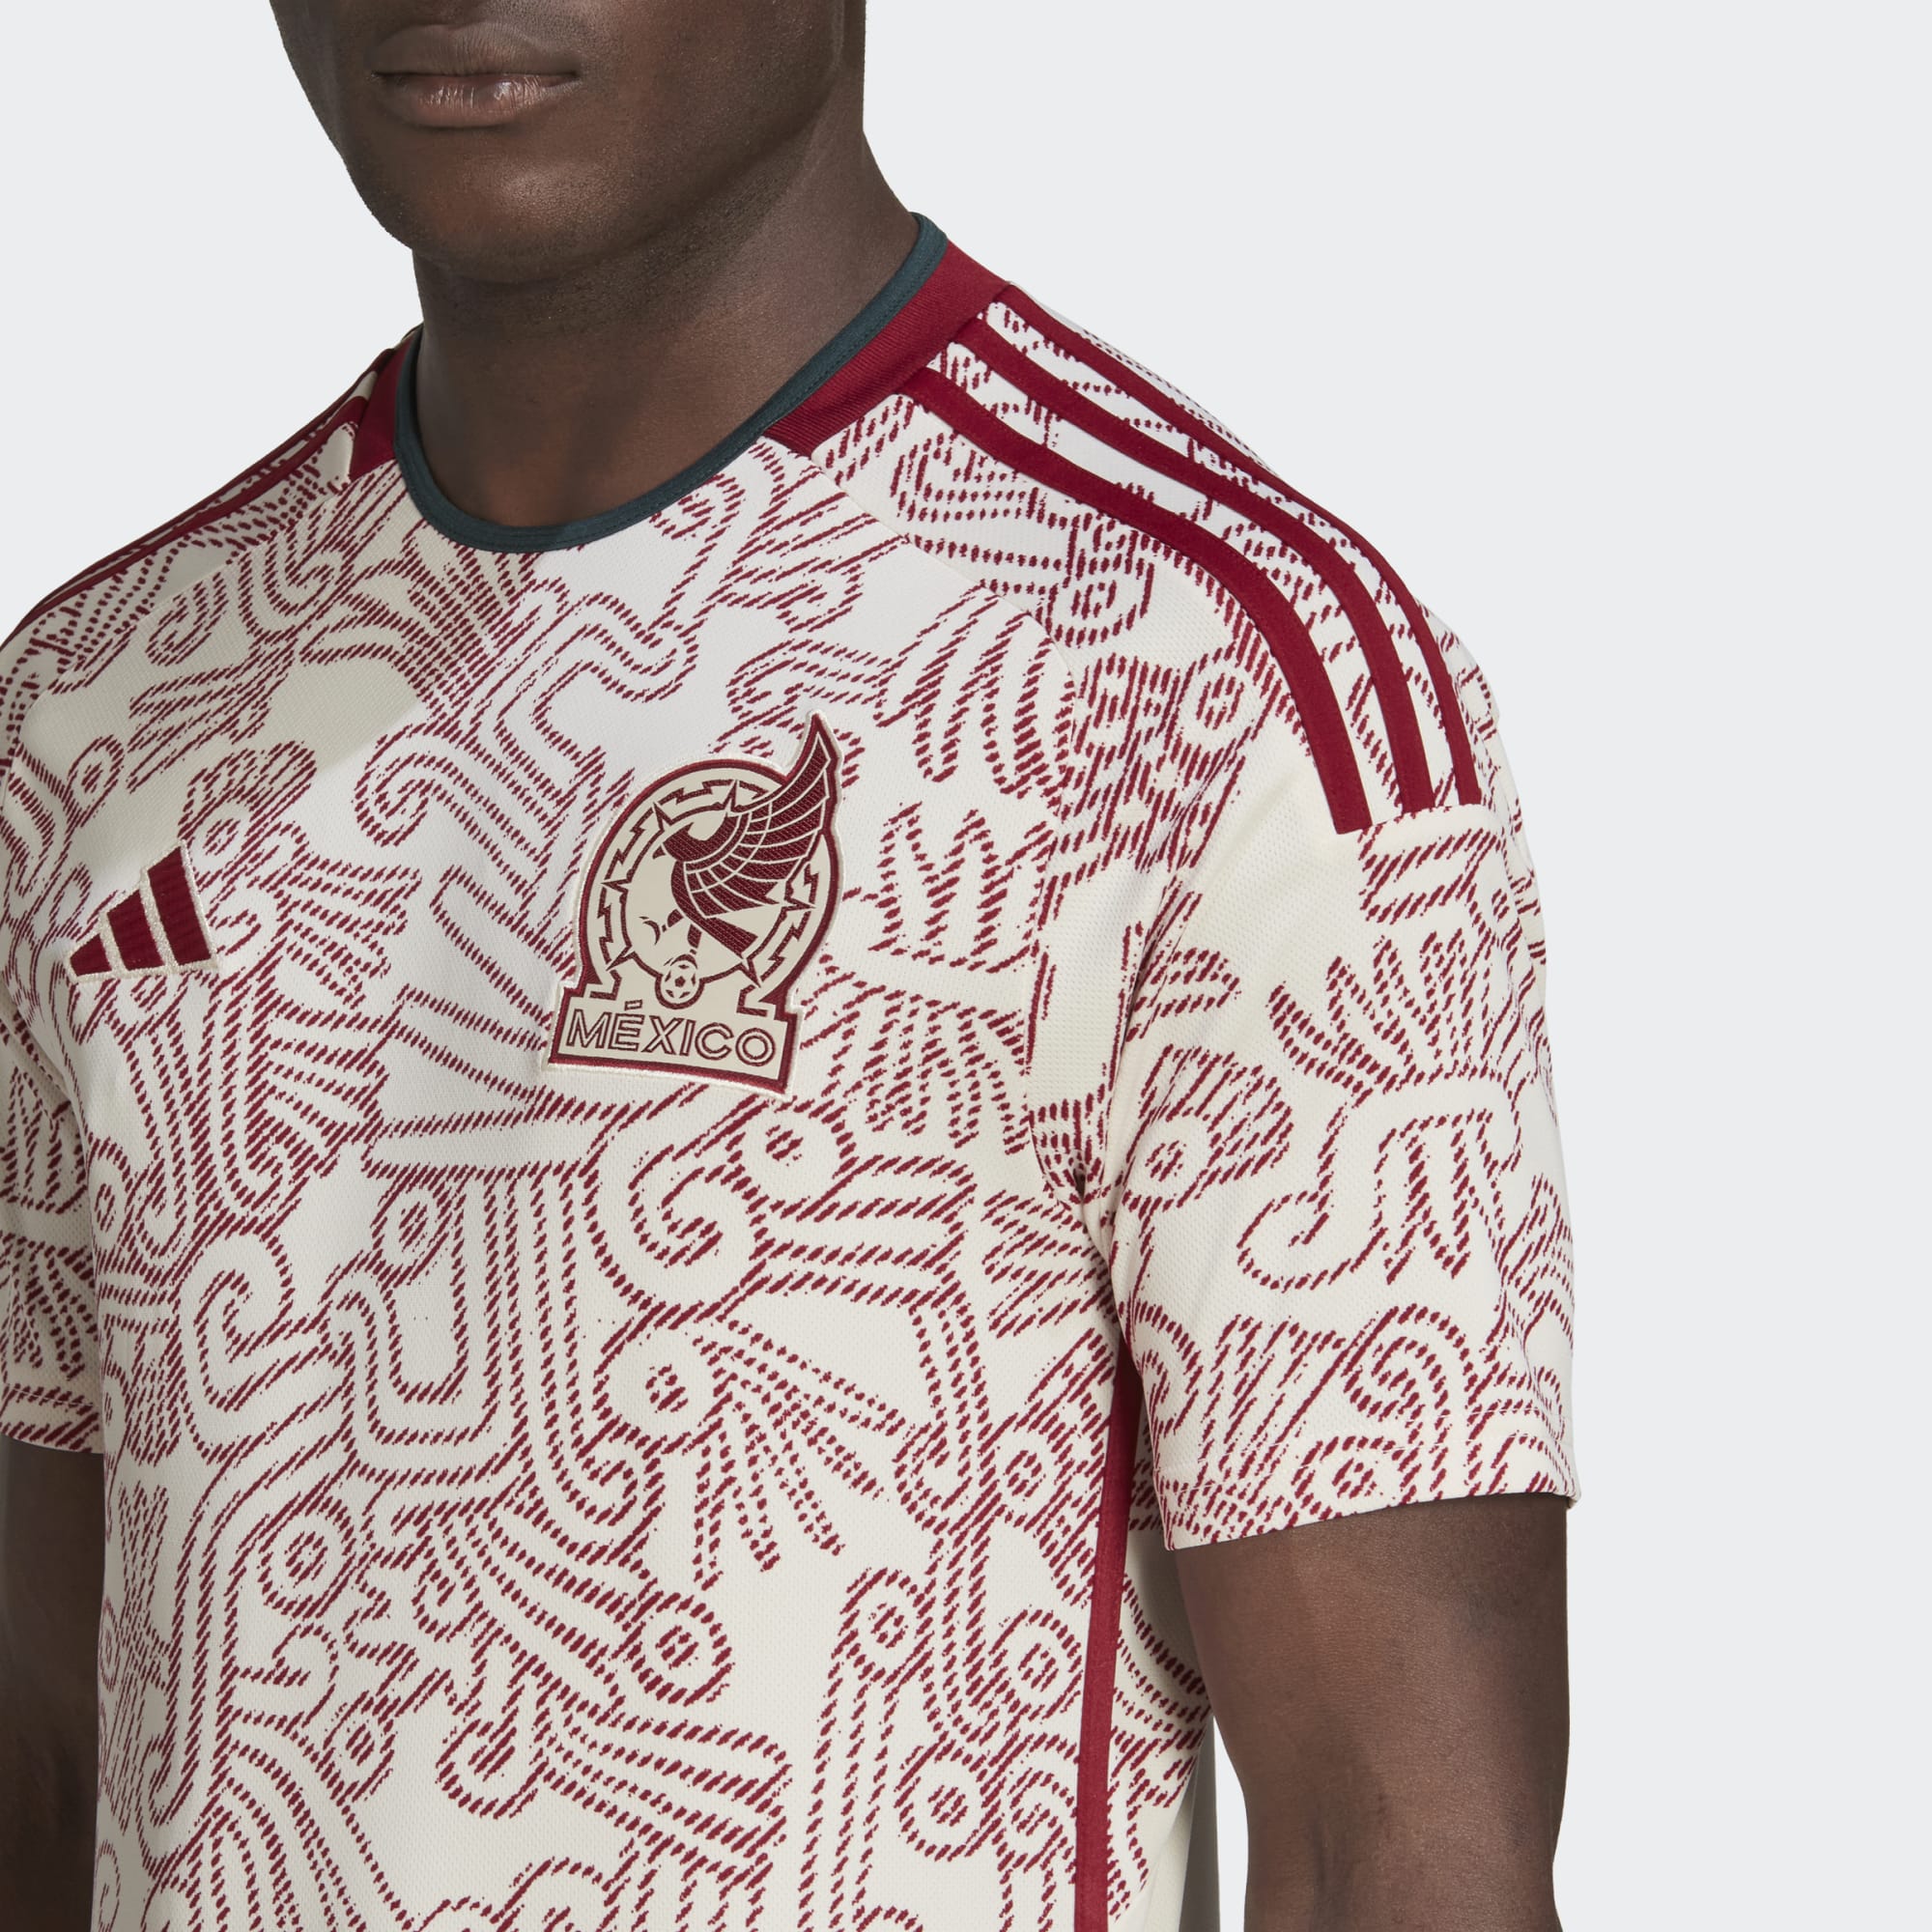 official adidas netflix men mexico soccer futbol maillot jersey medium